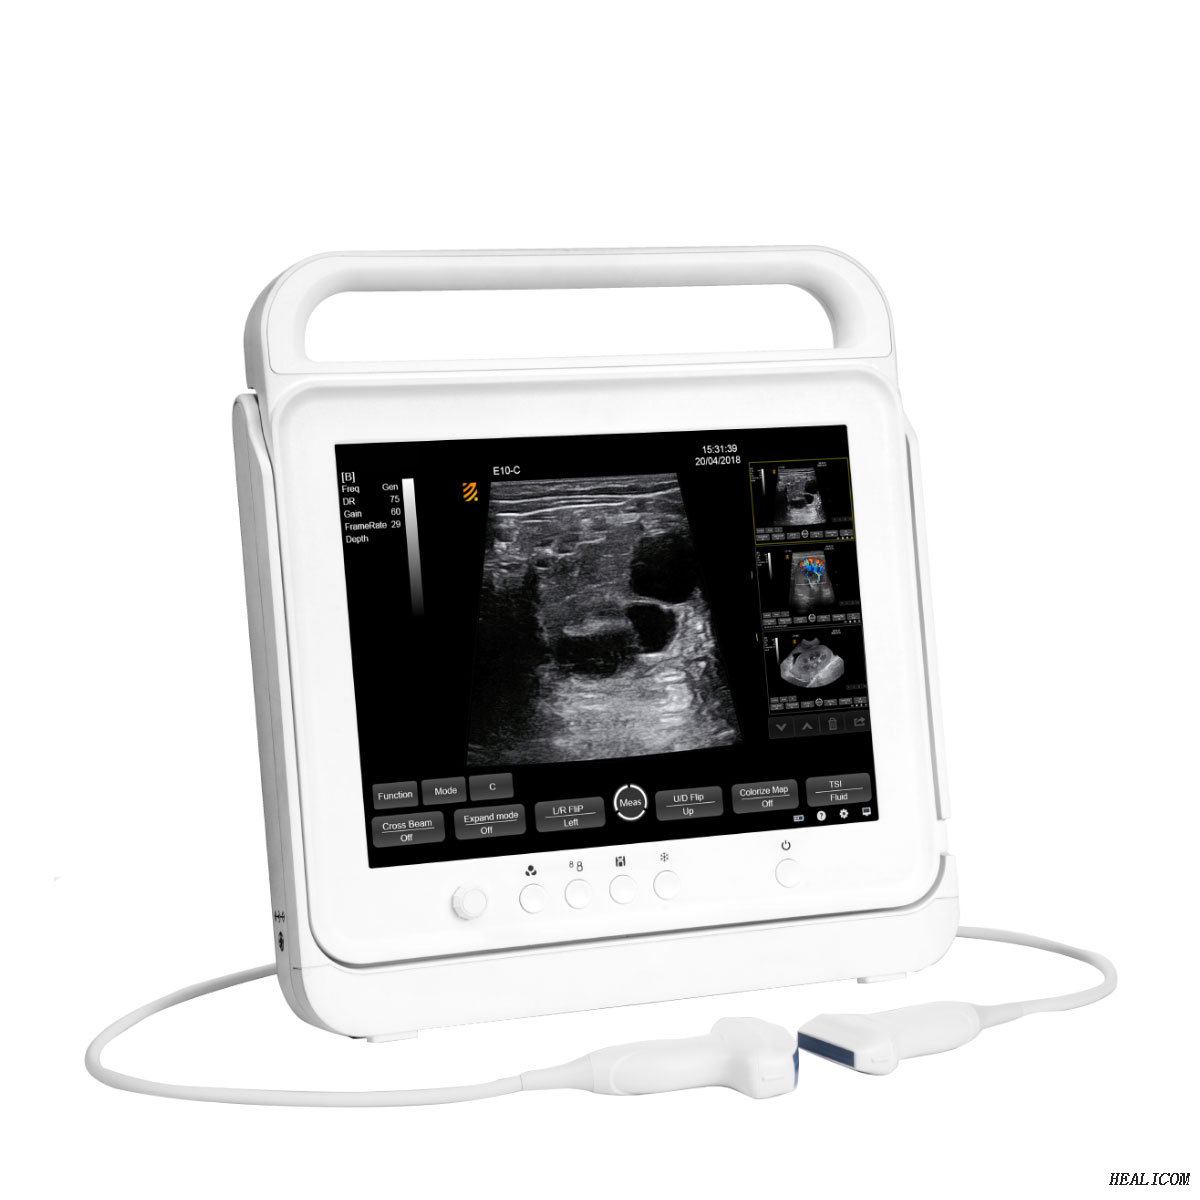 Equipo de ultrasonido veterinario HV-50C Escáner de ultrasonido Doppler a color táctil digital portátil